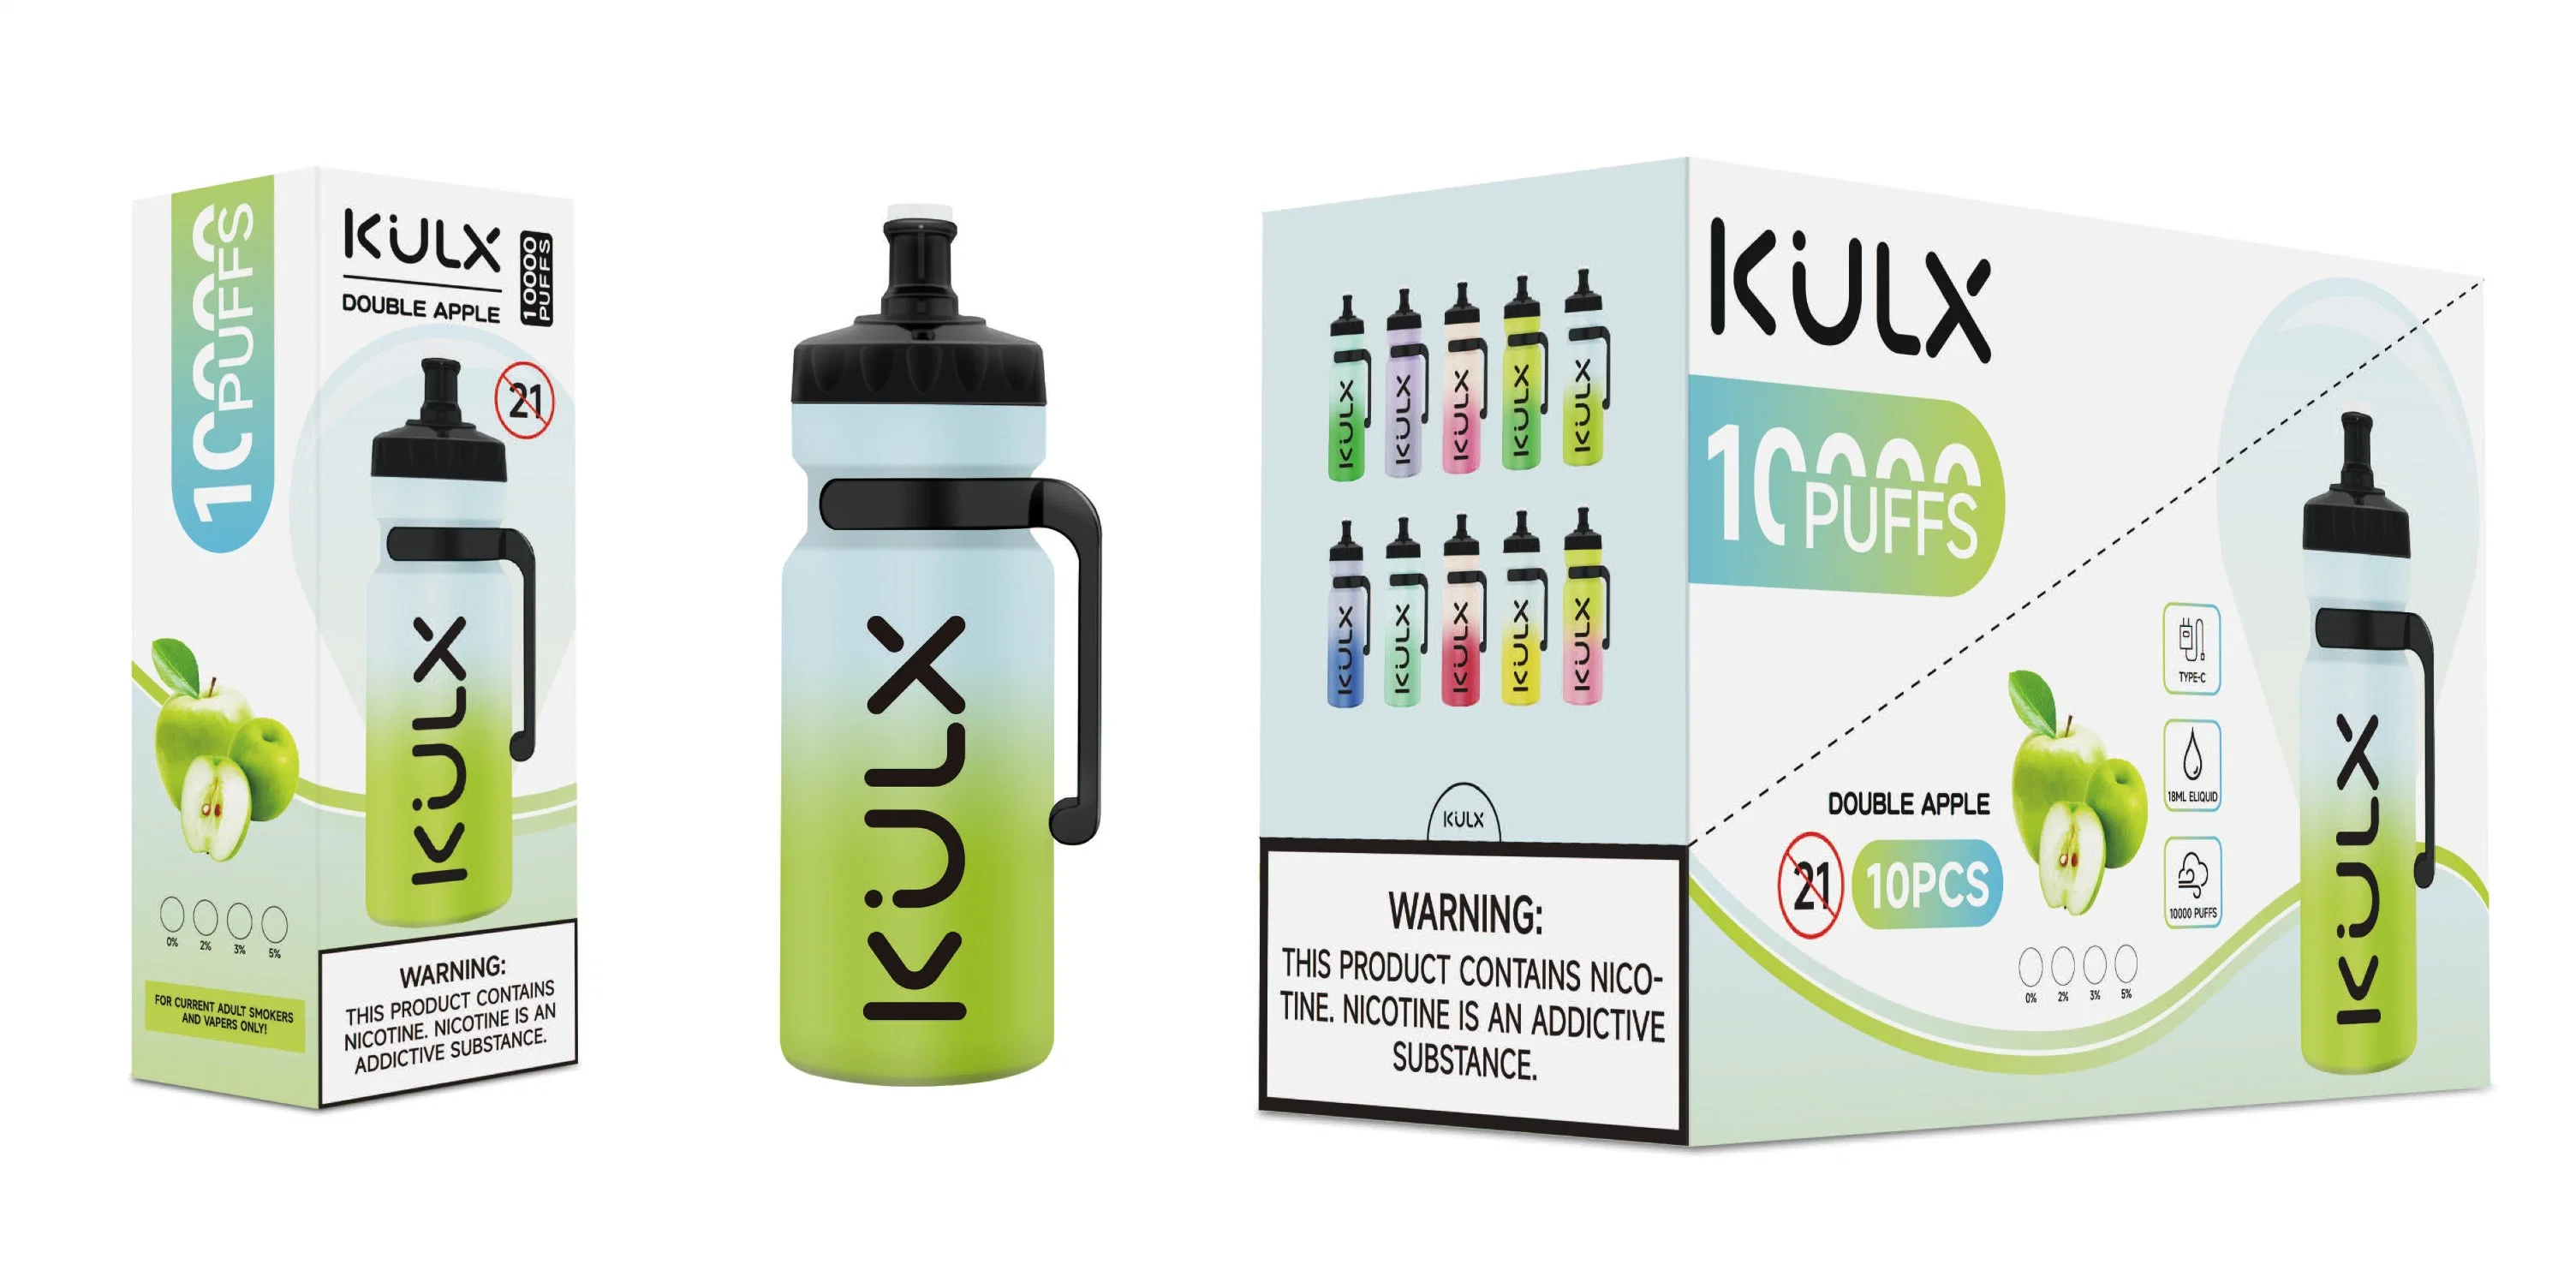 Venta caliente Kulx 10000 bocanadas de 18 ml de cigarrillos E desechables Vape de sabor a fruta